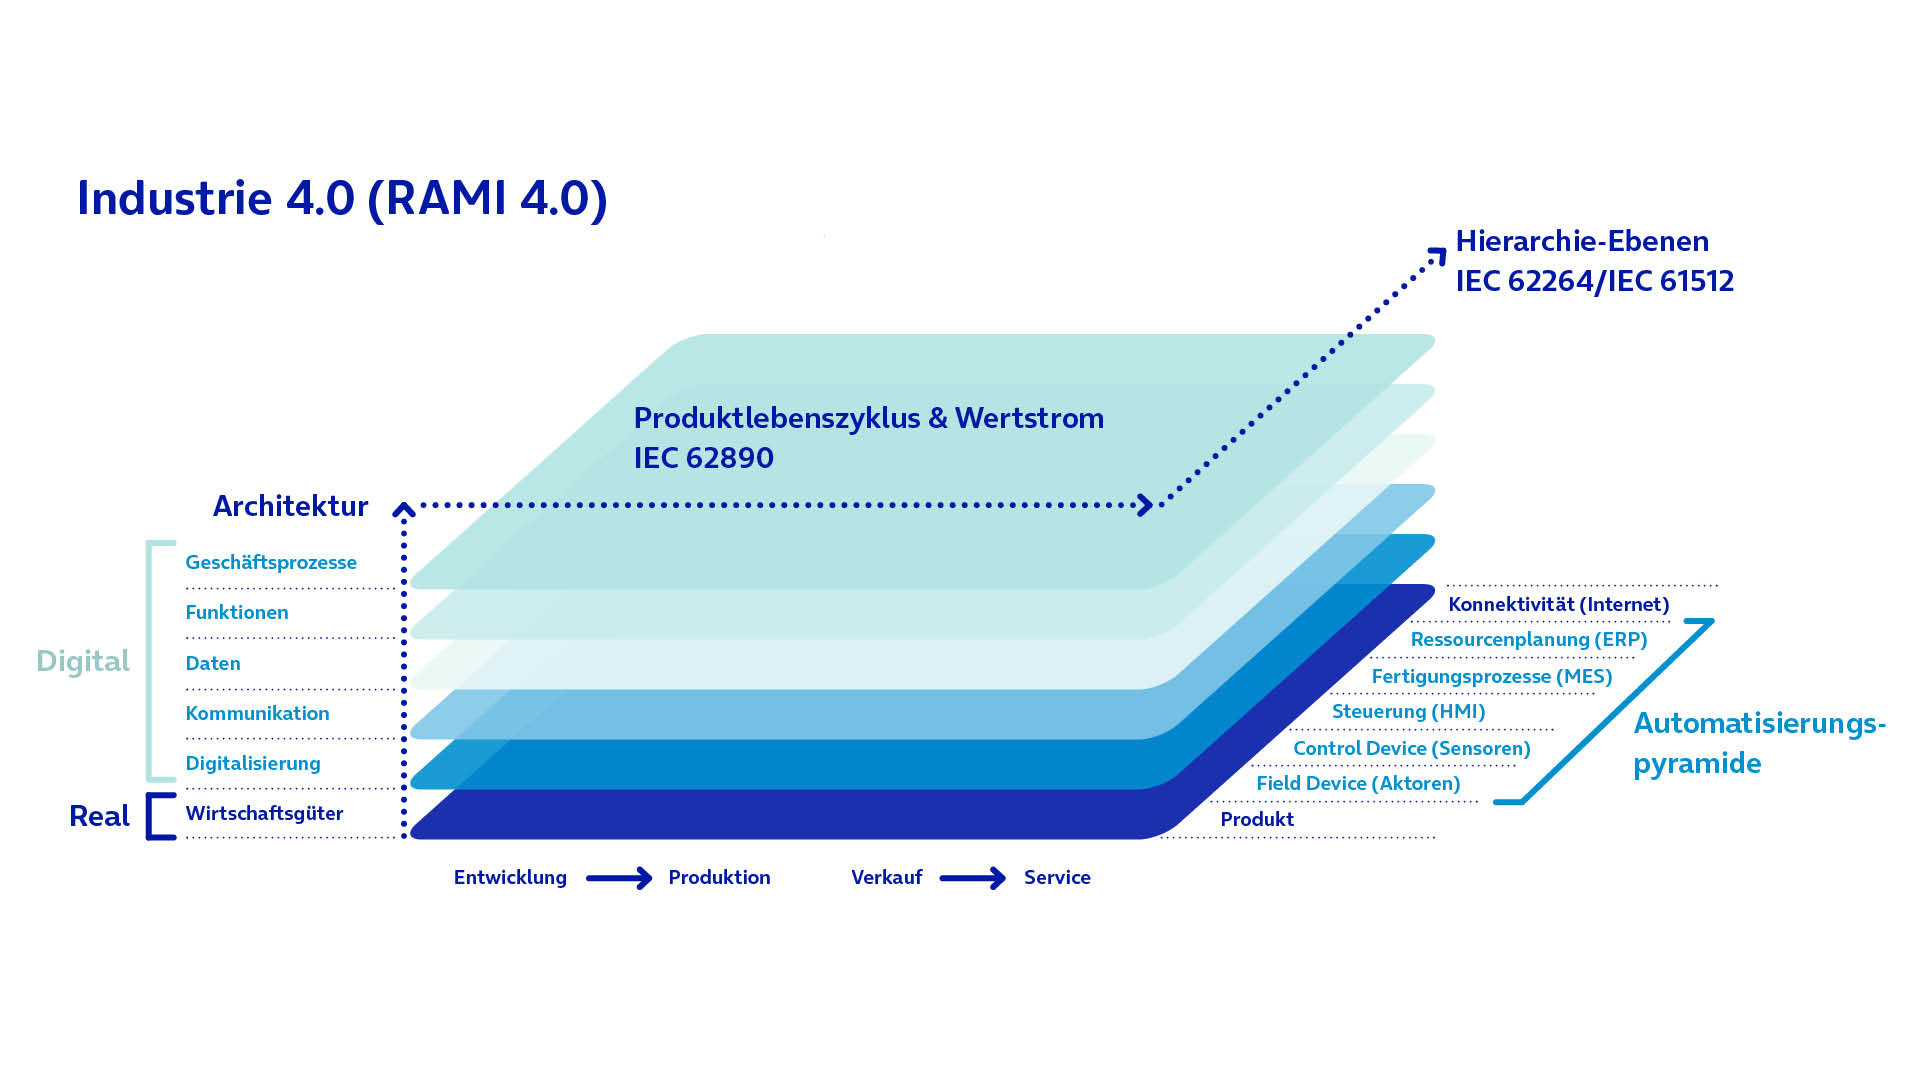 Das RAMI 4.0 Modell stellt eine grundlegende und standardisierte Architektur für Industrie 4.0 dar